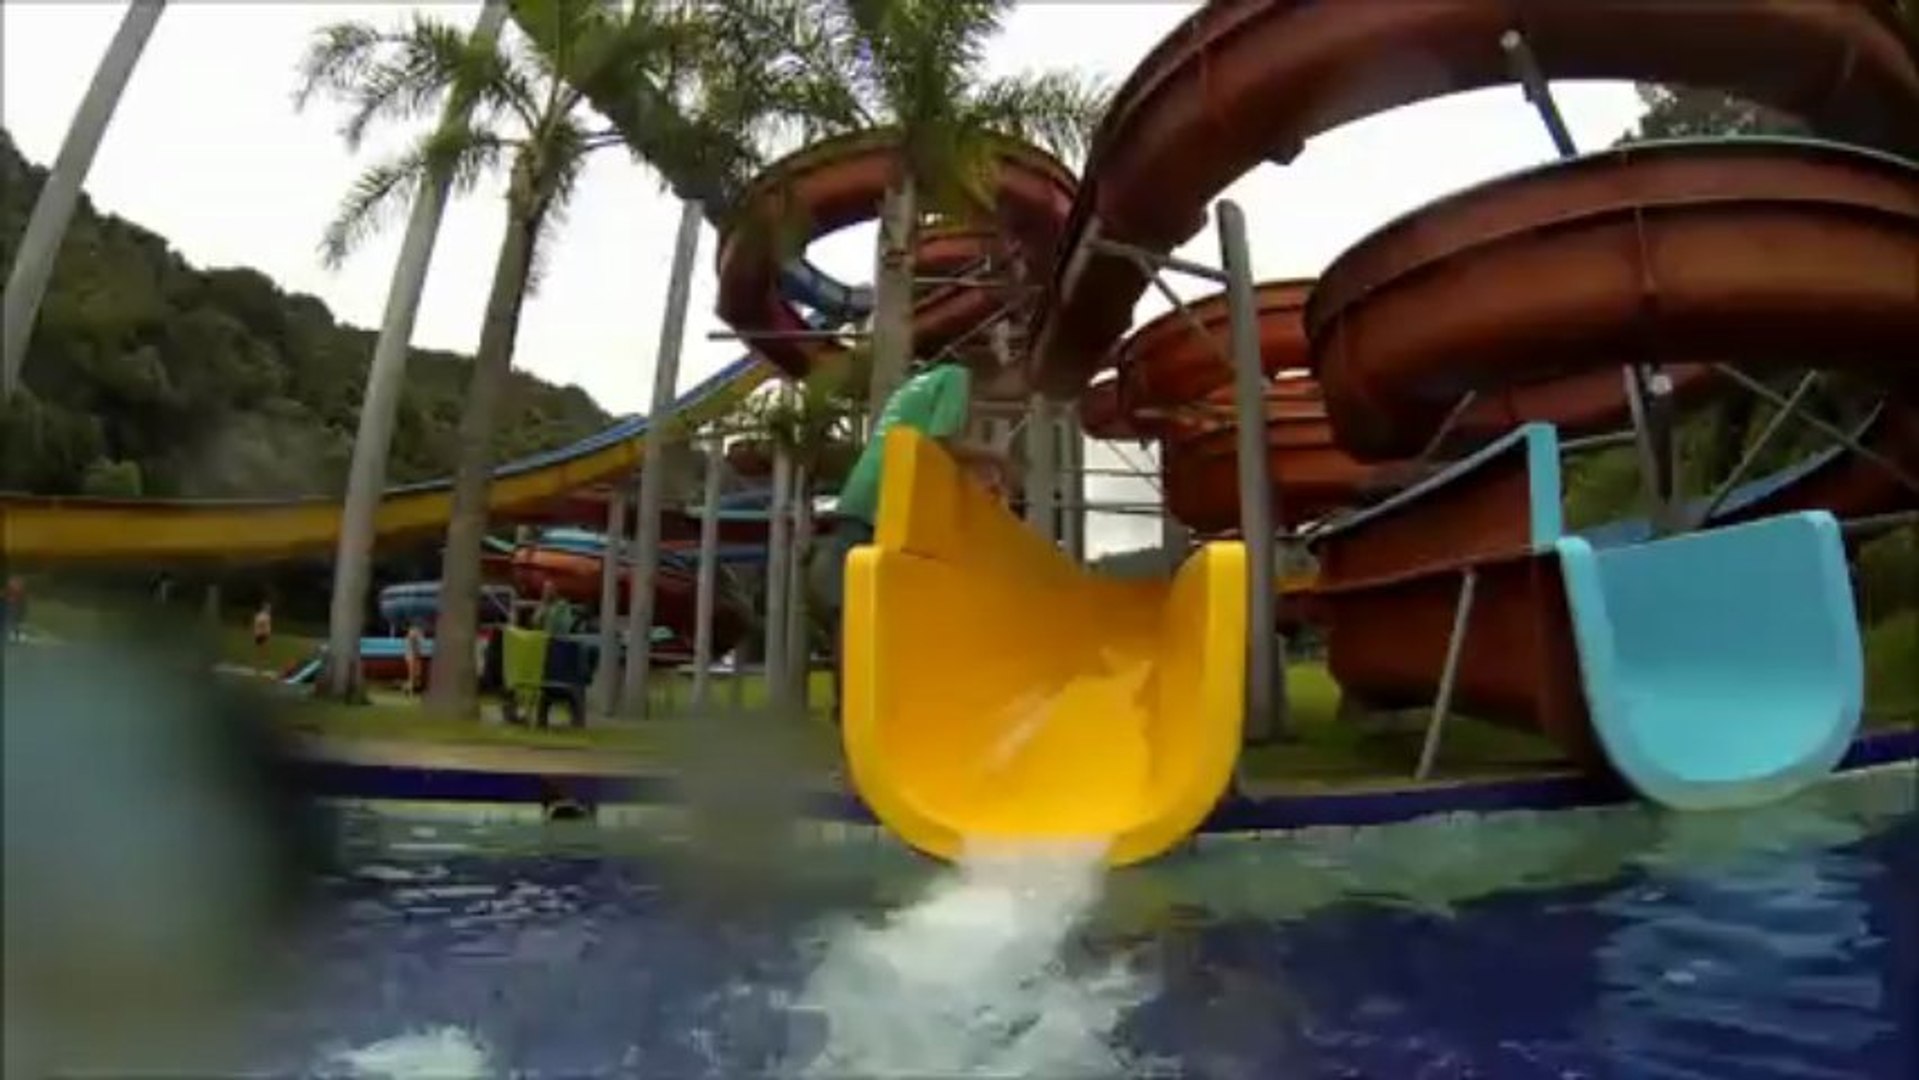 Viva Parque Parque Aquático - Juquitiba (Angelo, Thiago e Priscilla) GoPro  Hero3 Black Edition - Vídeo Dailymotion